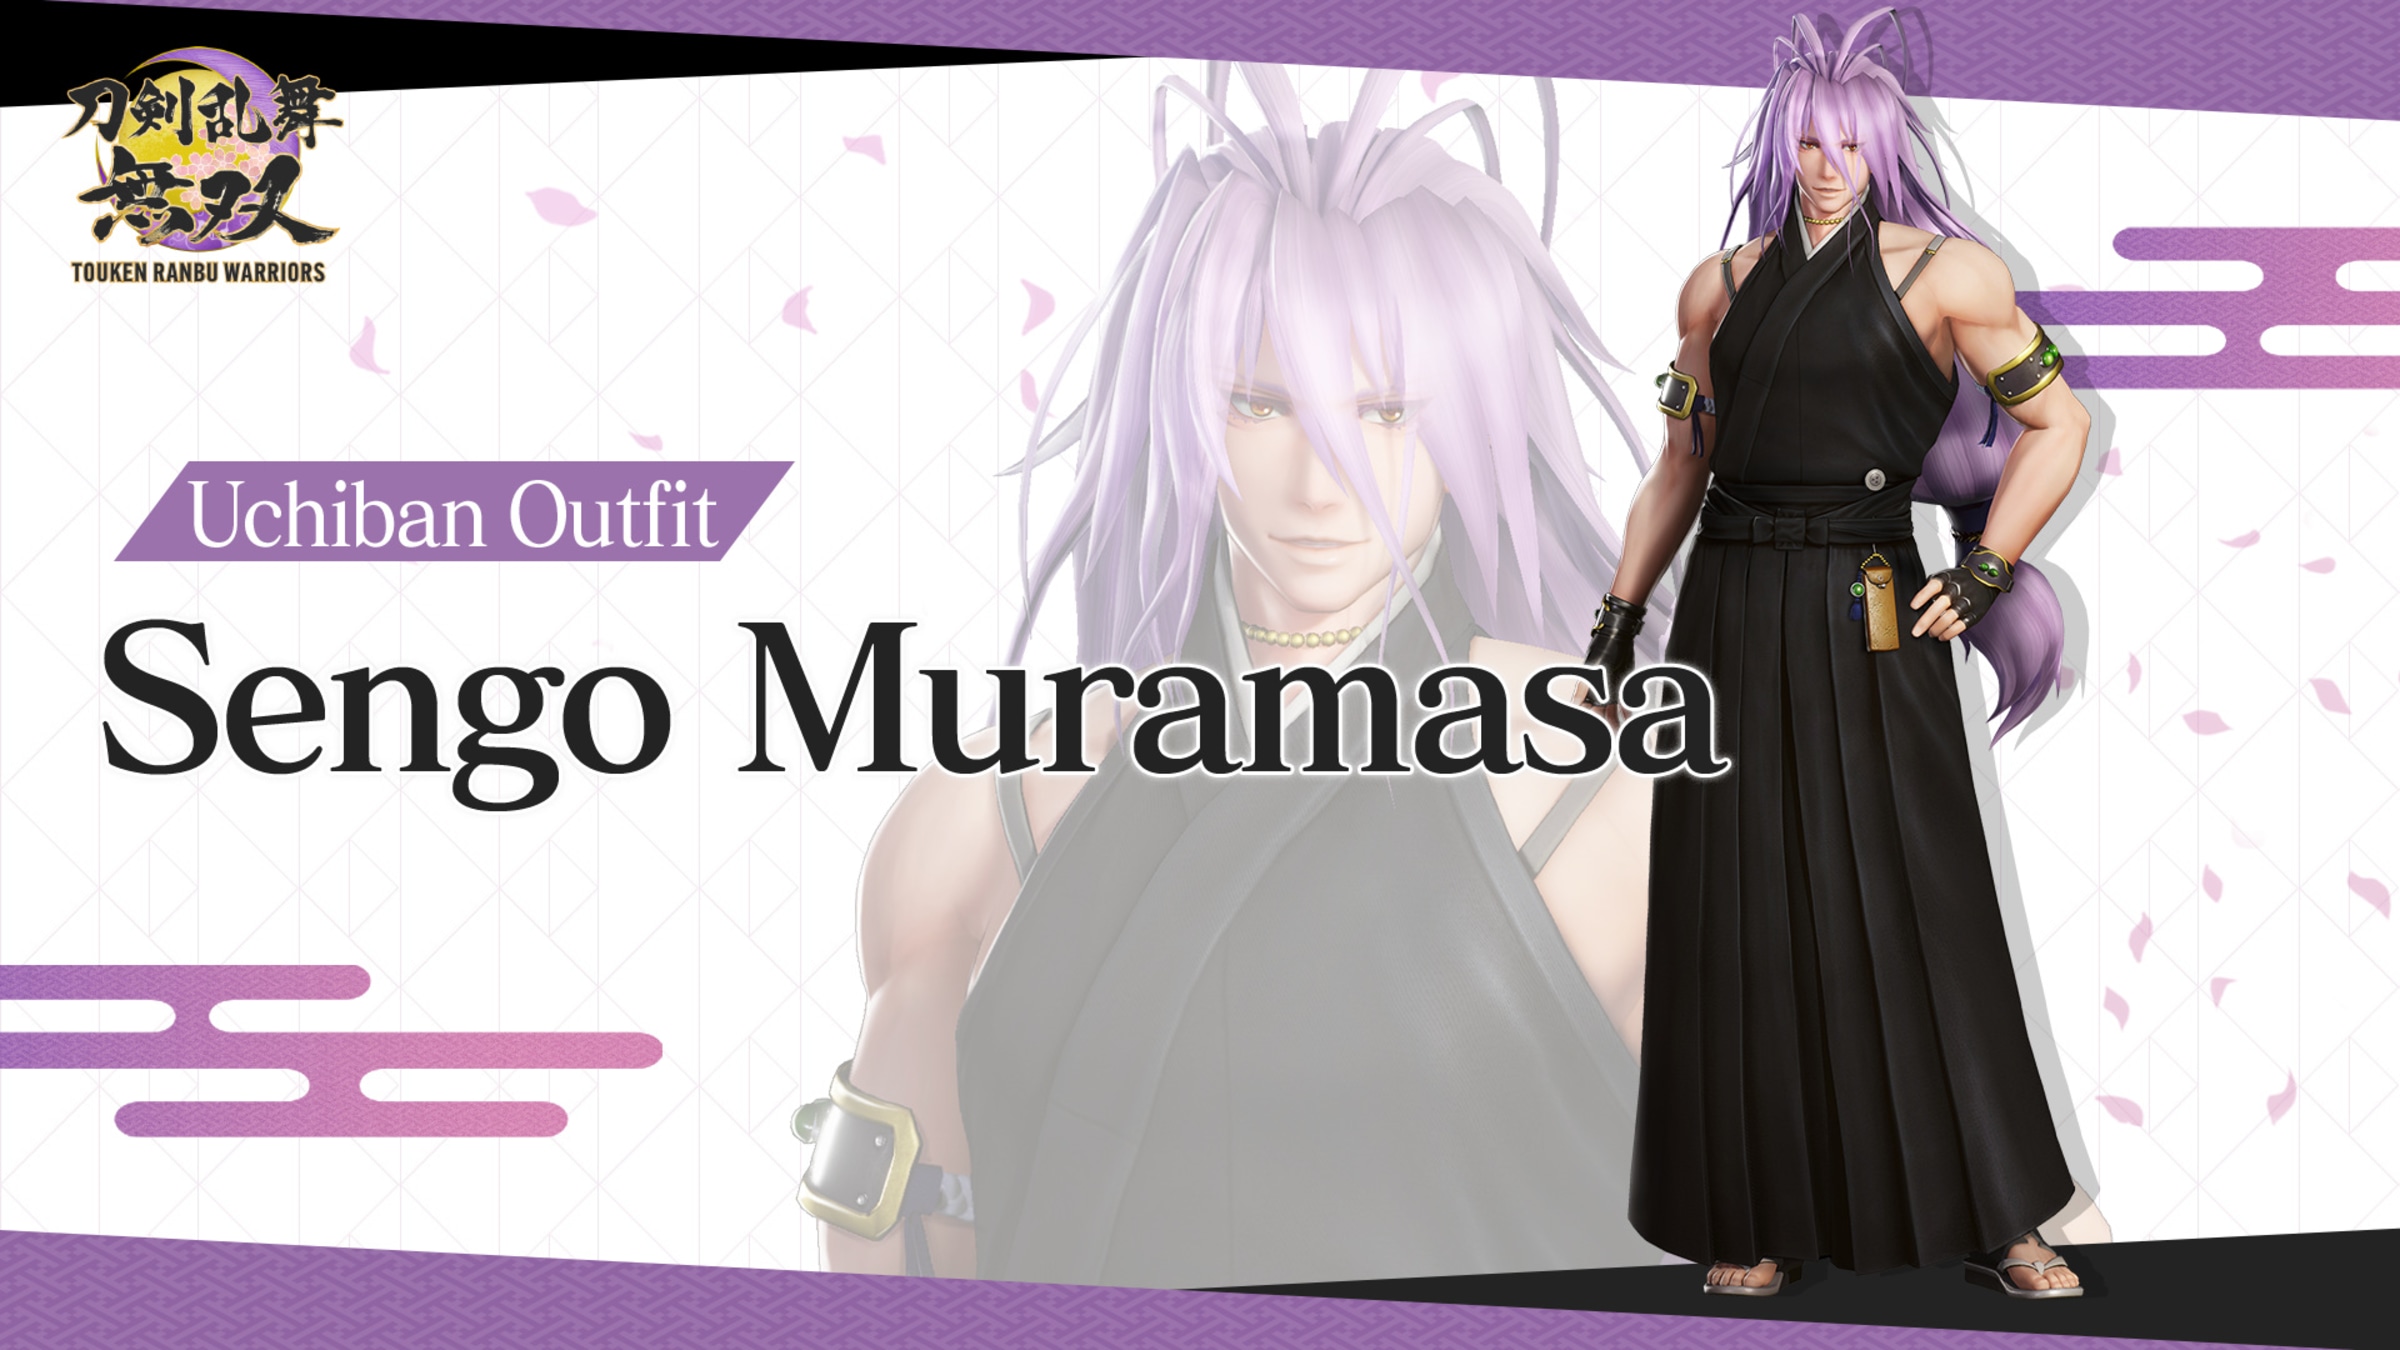 How do I get Muramasa?